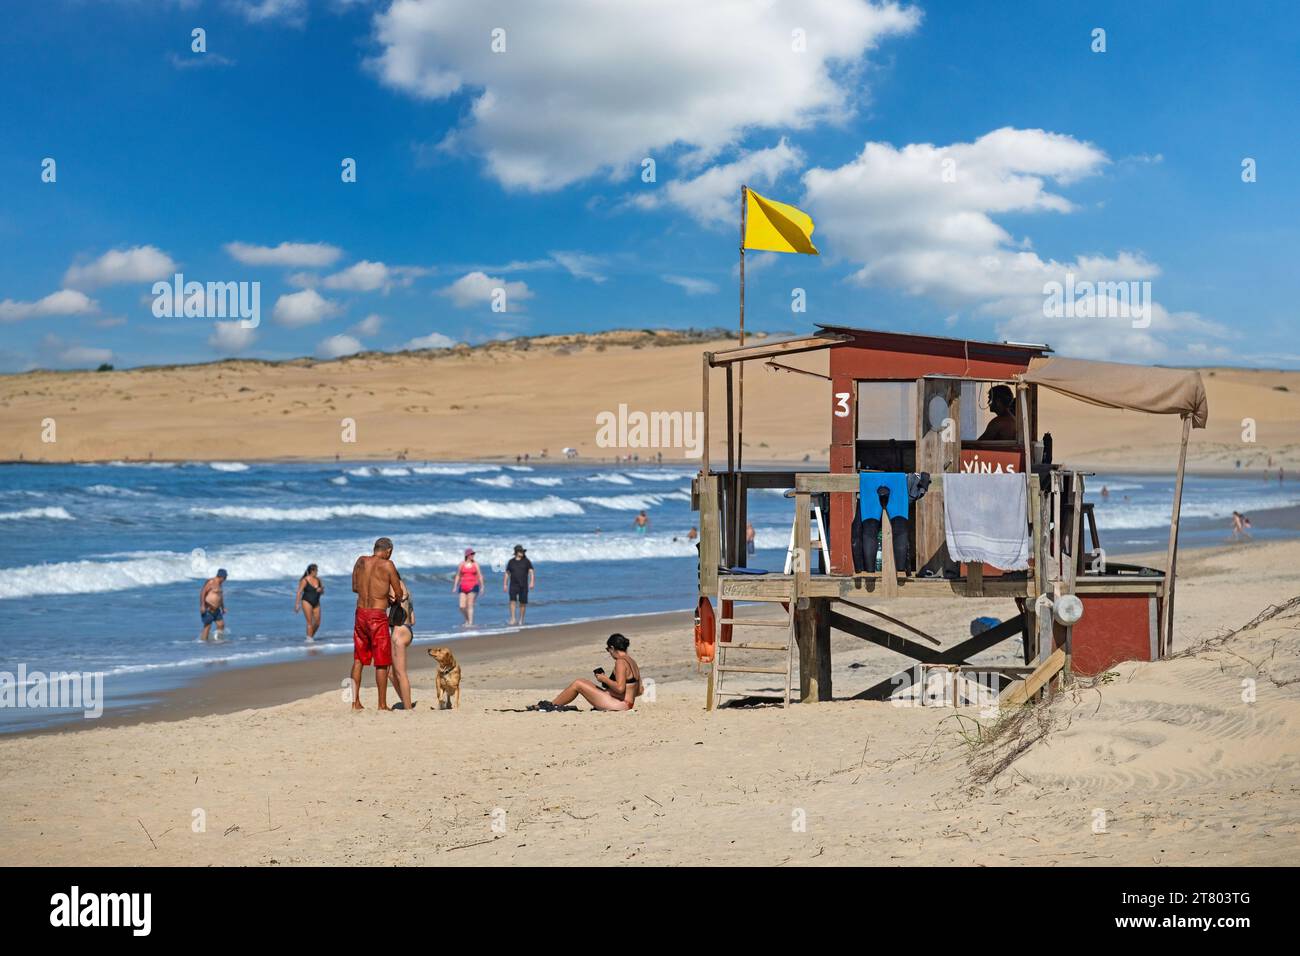 Rettungsschwimmer Turm und Touristen, die am Strand von Barra de Valizas, Badeort / Balneario entlang des Atlantischen Ozeans, Rocha, Uruguay, Südamerika wandern Stockfoto